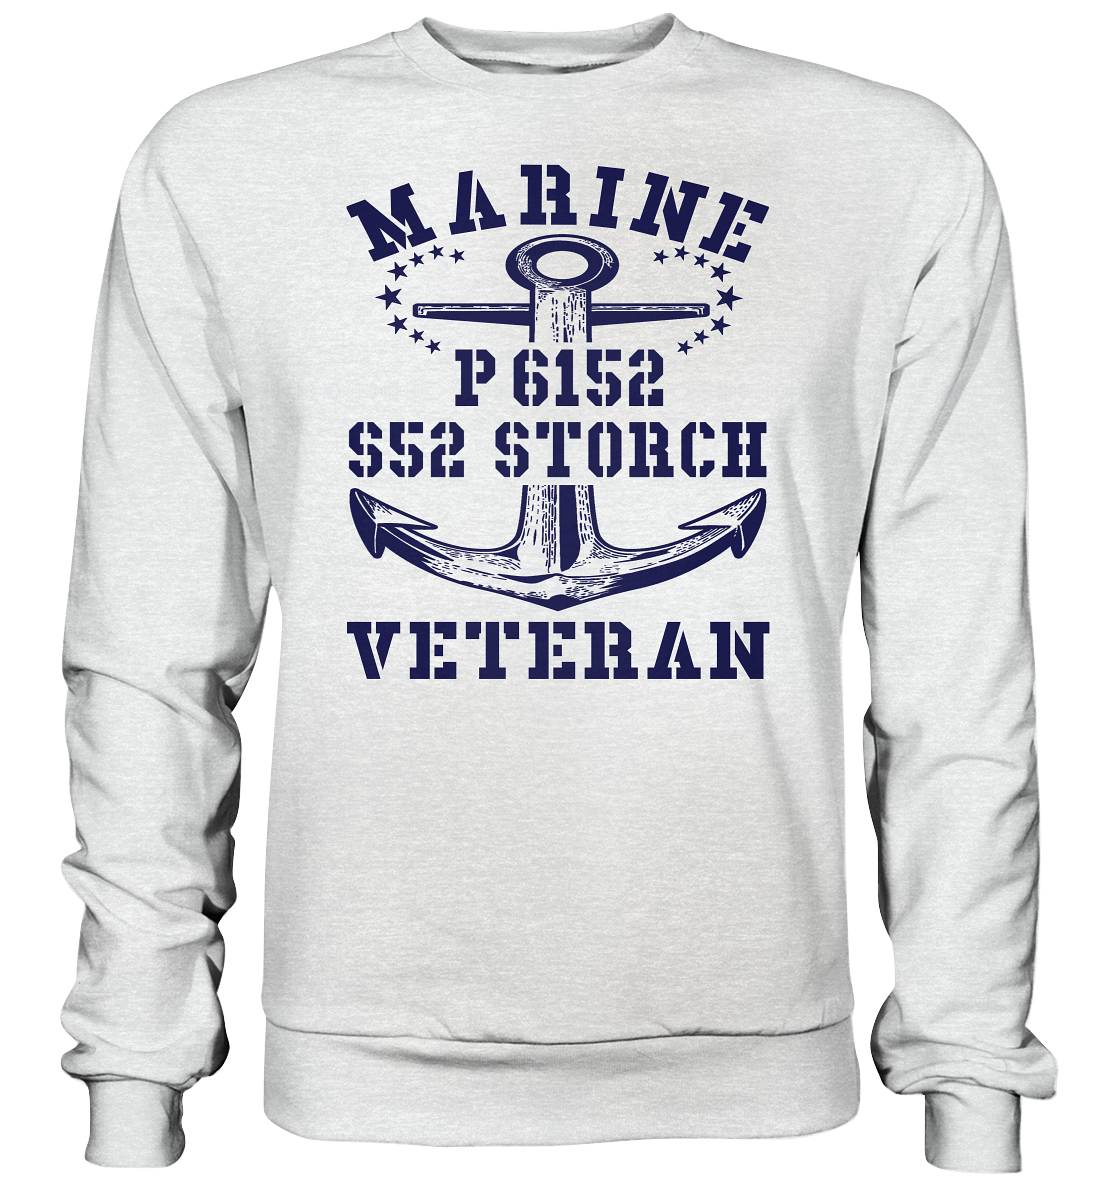 P6152 S52 STORCH Marine Veteran - Premium Sweatshirt